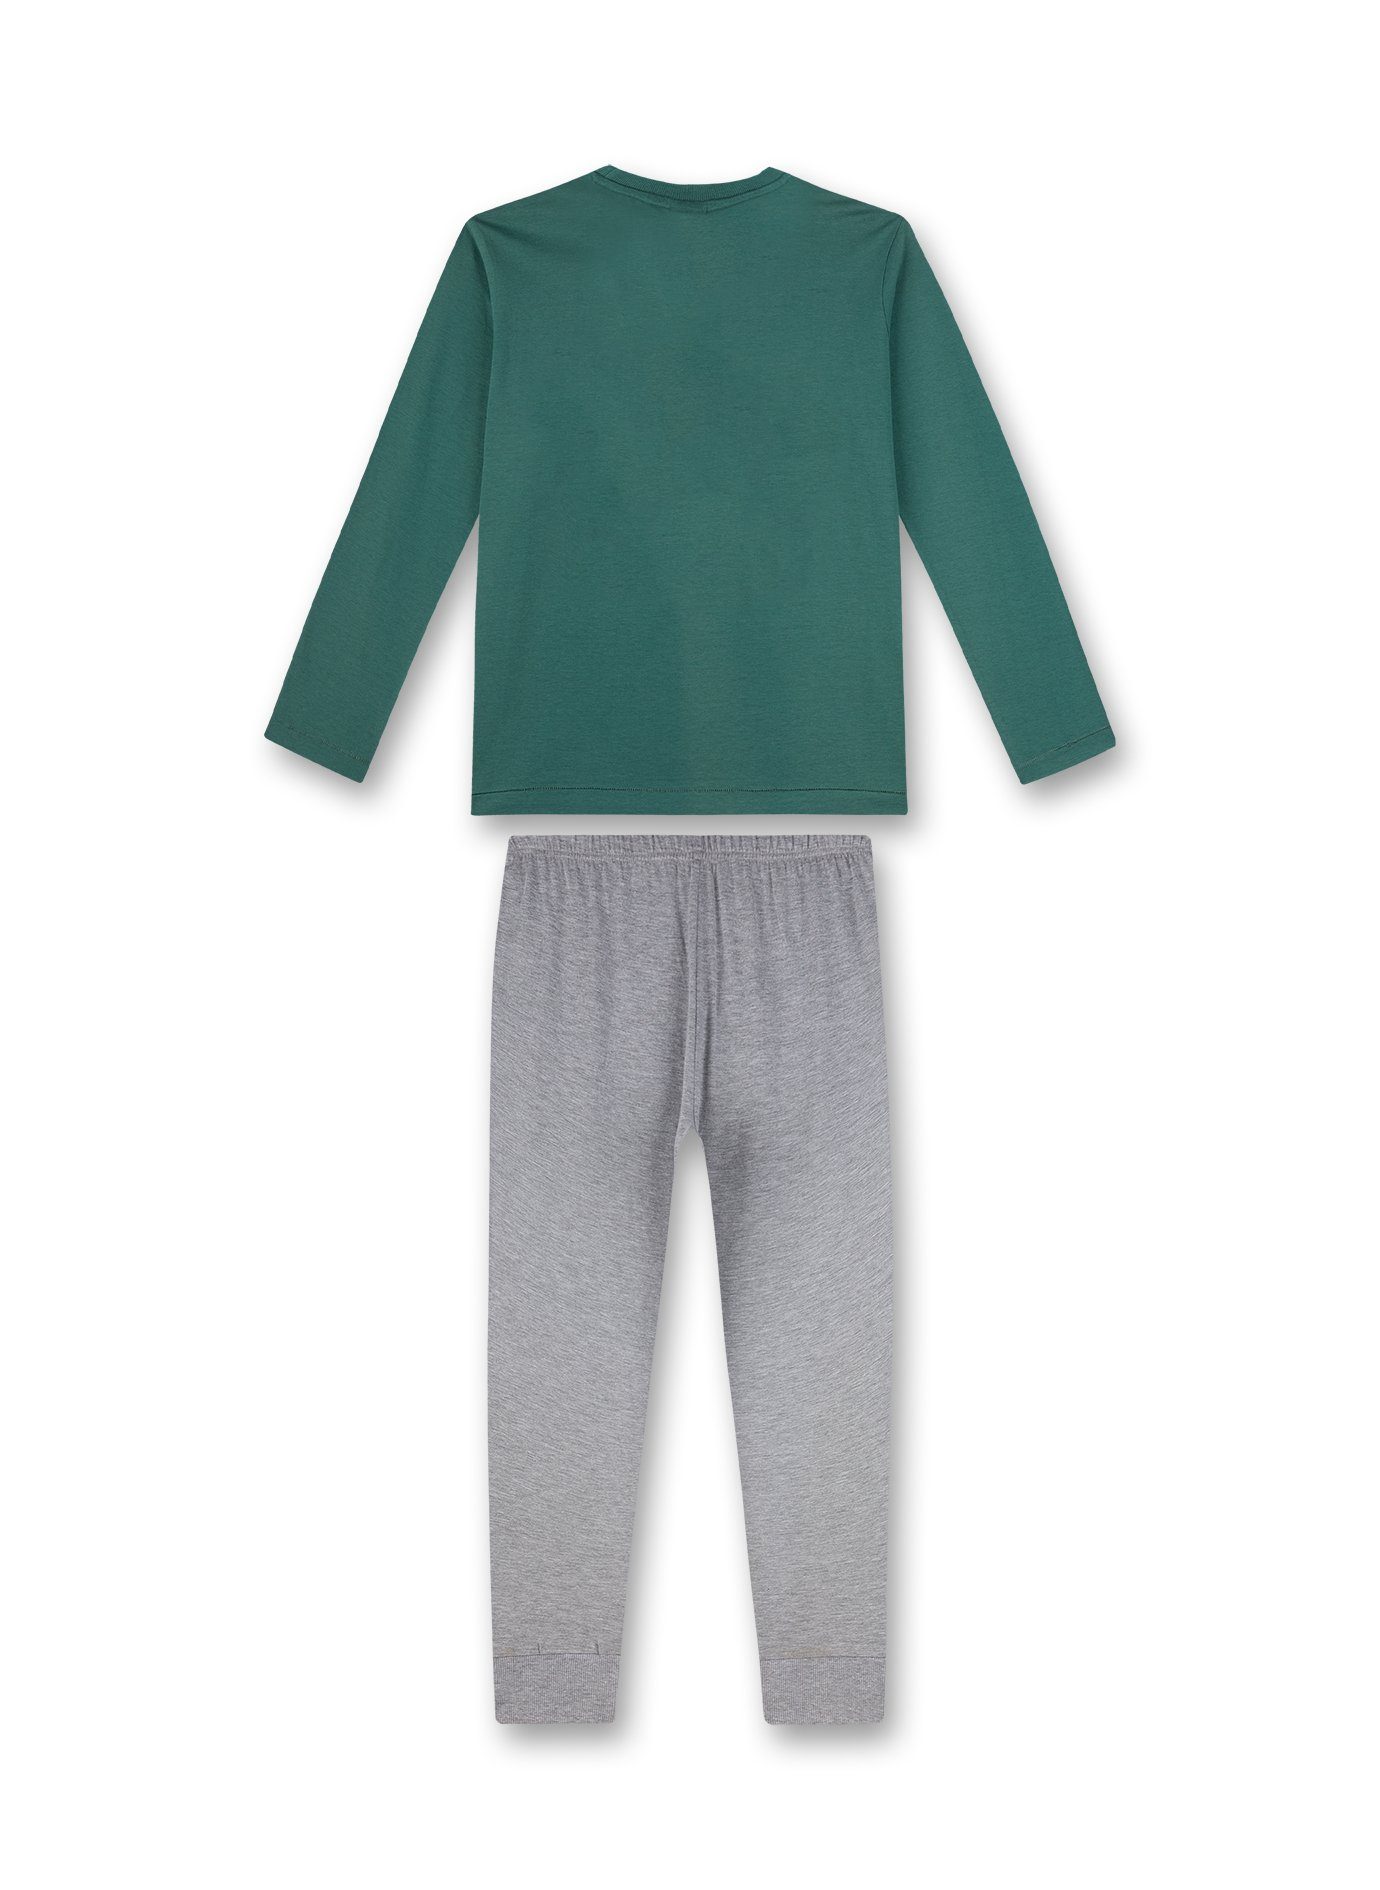 s.Oliver s.Oliver Jungen lang Outer grün Space (2 tlg) Pyjama Junior Pyjama Schlafanzug grau